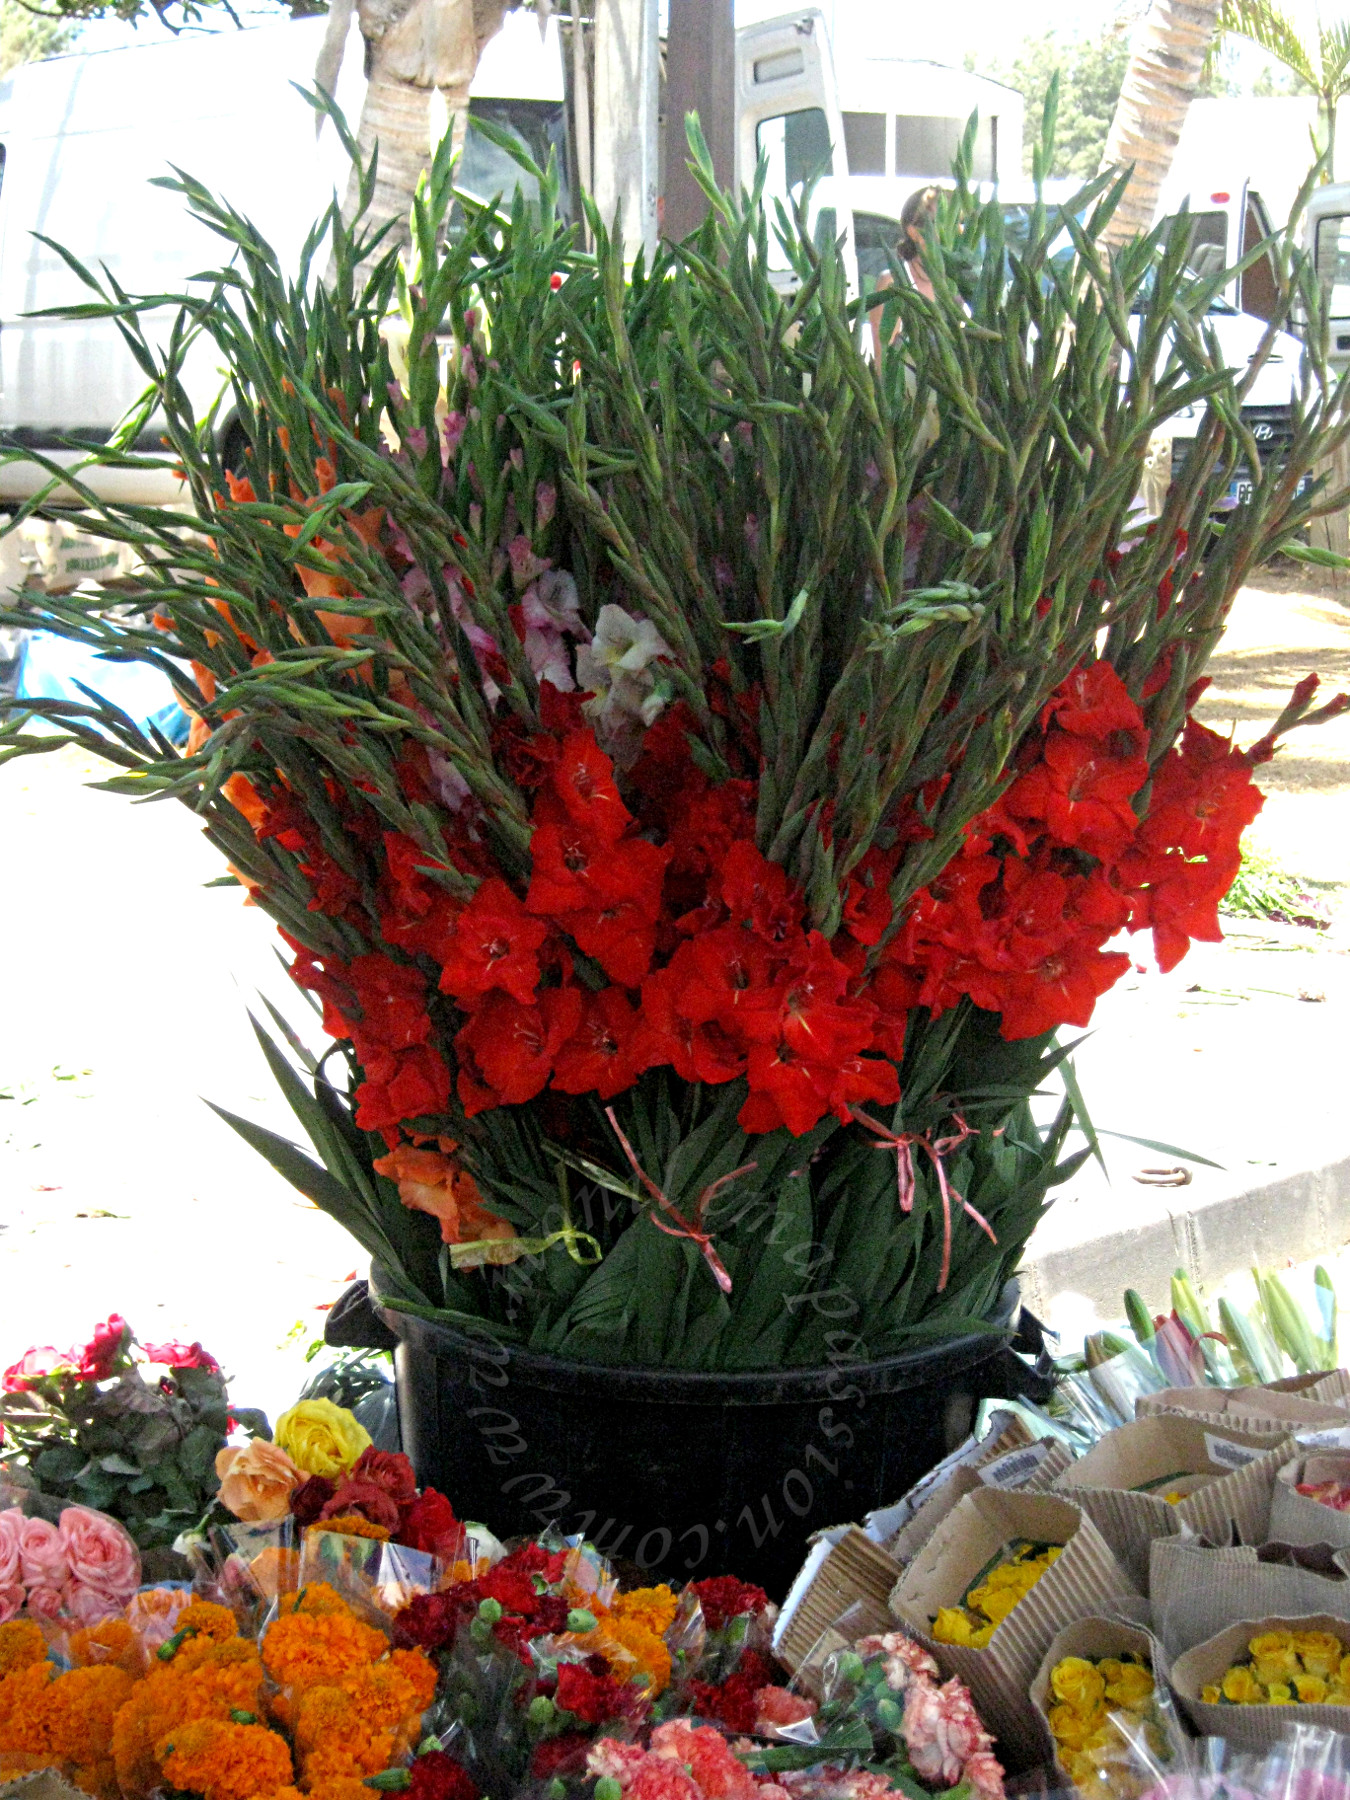 ￼￼Le marché forain de Saint-Pierre (La Réunion) - Saint Peter's farmers' market (Reunion Island)